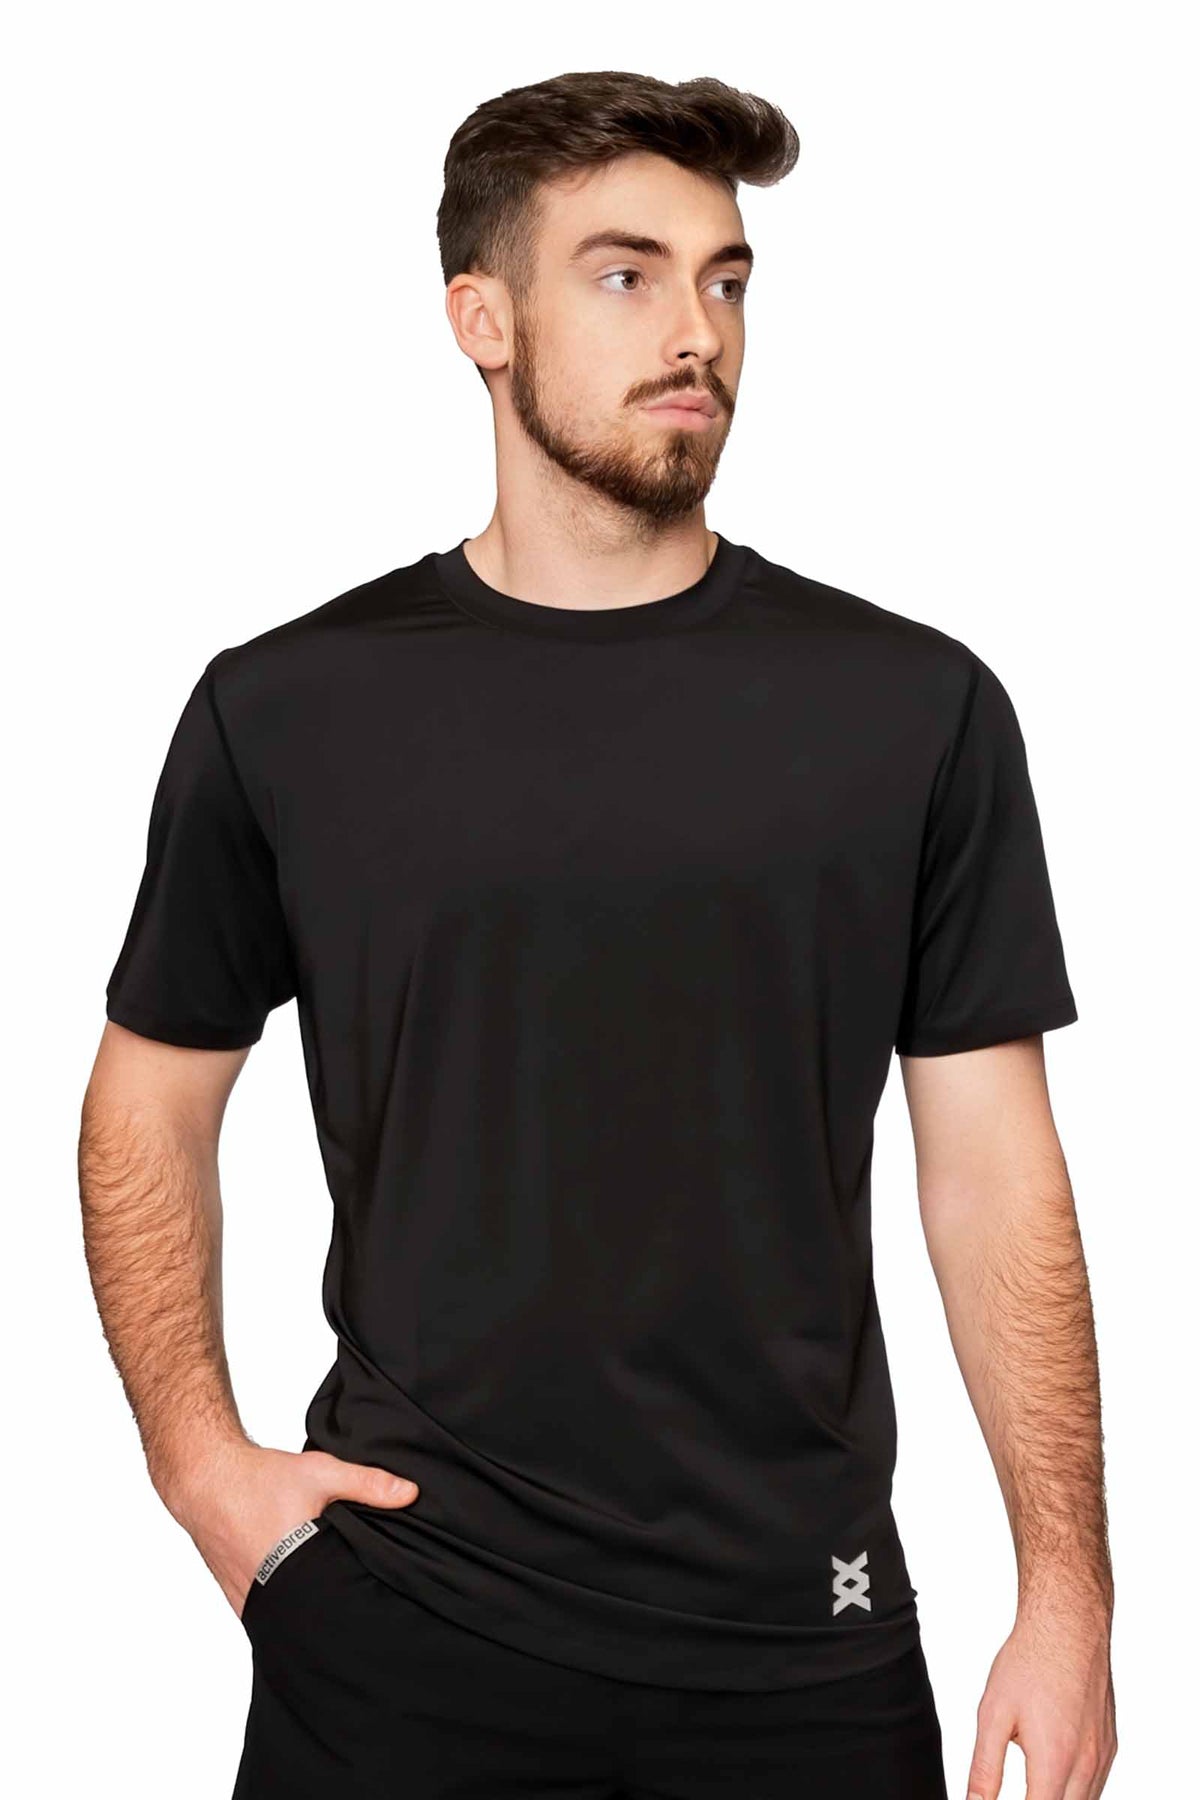 | Men\'s Lightweight Workout Shirt Endurance activebred Shirt |